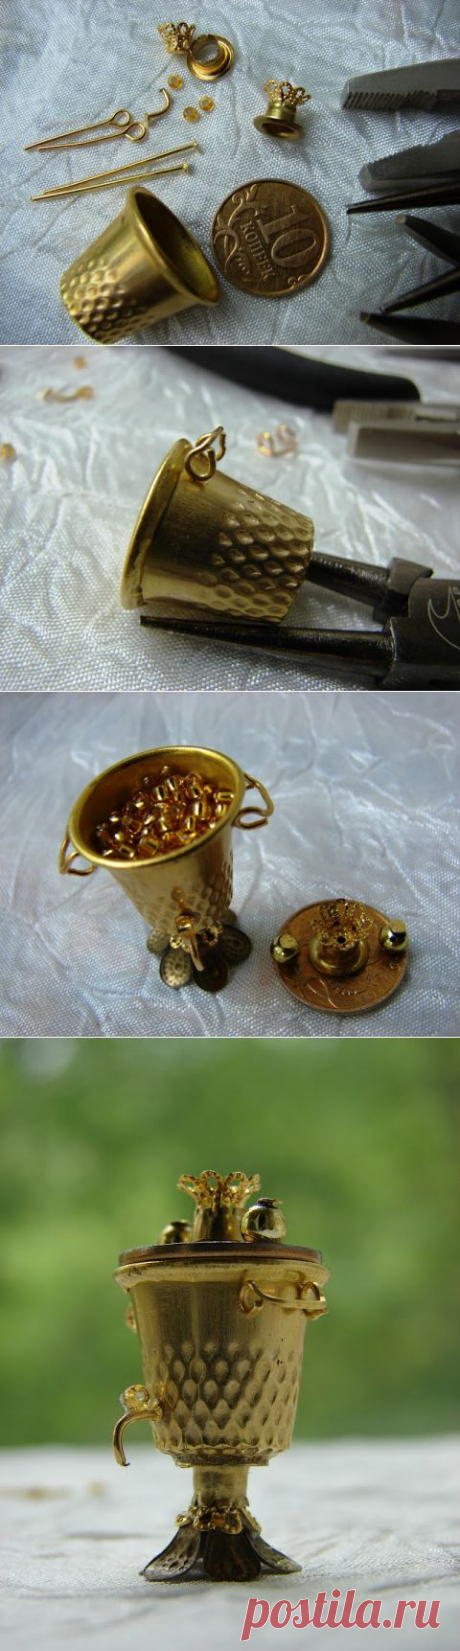 Самовар из напёрстка
4Dekor вдохновение: Чайник из напёрстка, или Как Левша самовар изобрел...)))